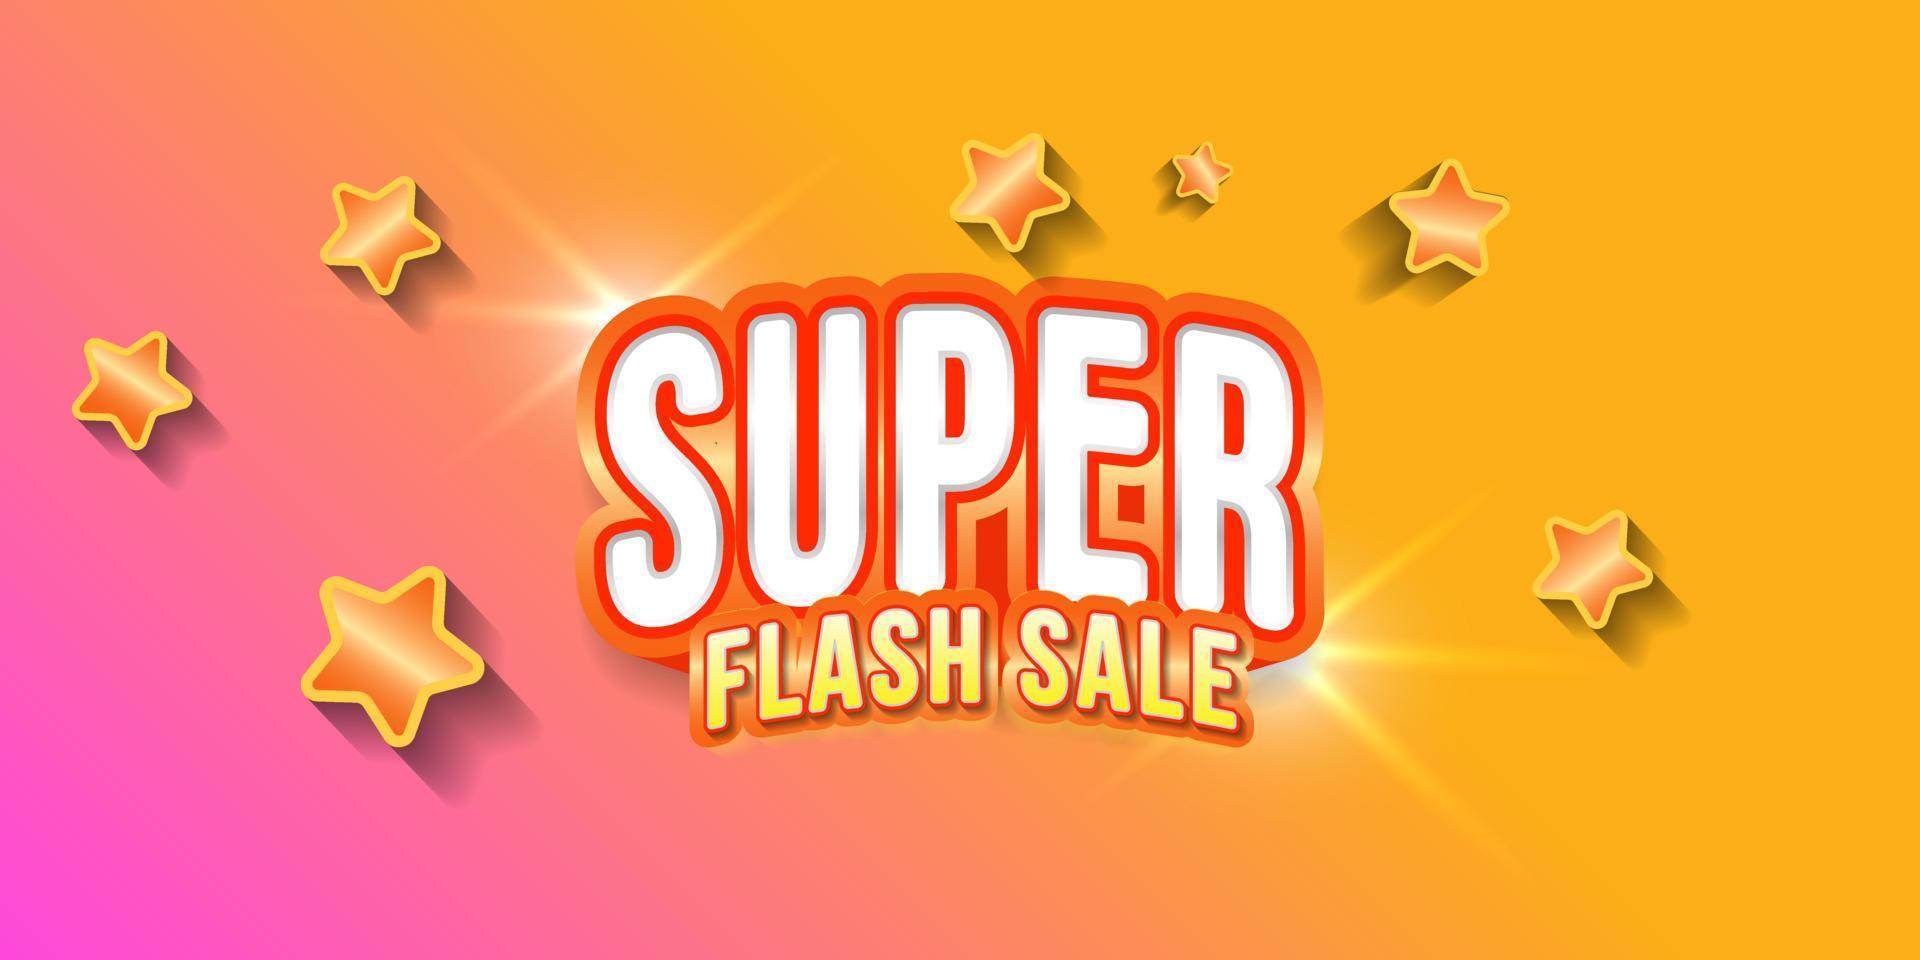 Flash sale banner template design. super sale. vector illustration.